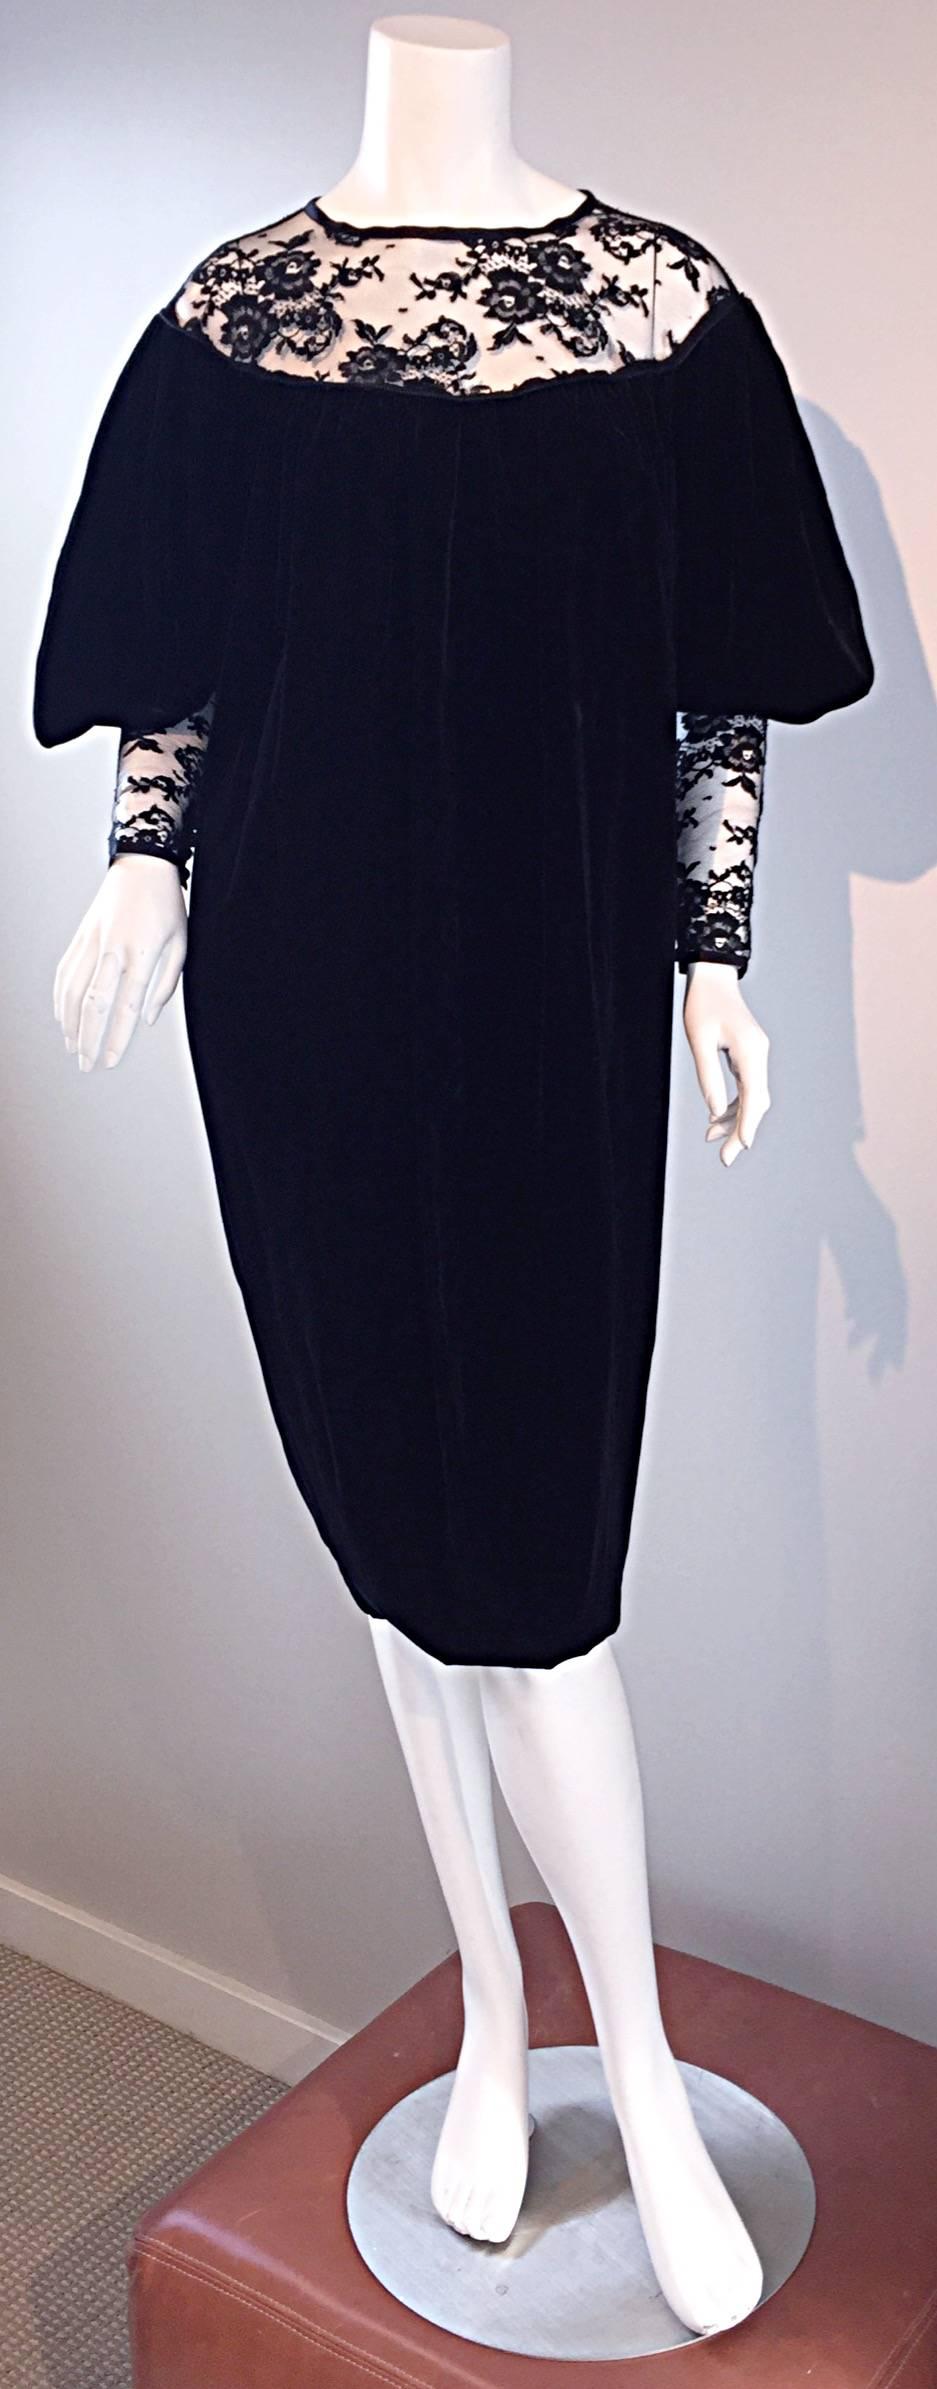 Important Documented Vintage Yves Saint Laurent c 1981 Black Velvet + Lace Dress 1